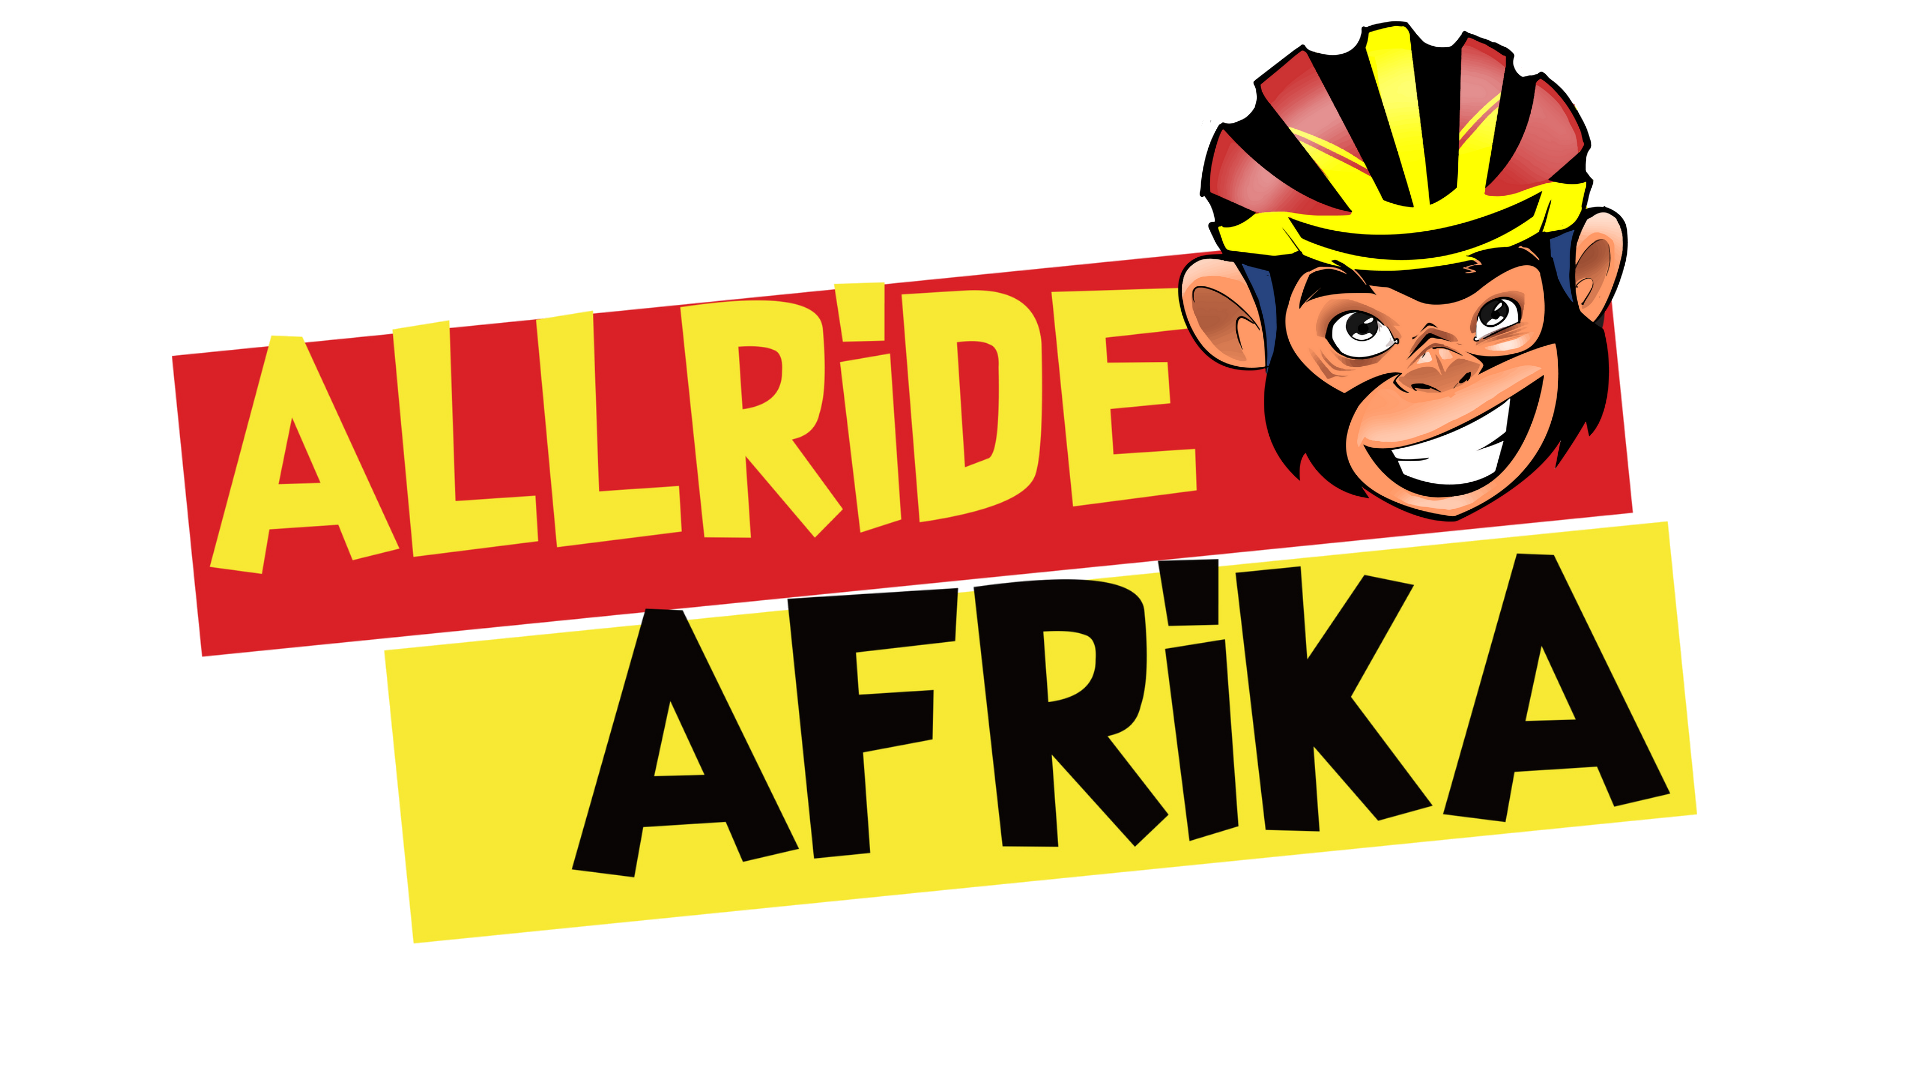 Monkey head logo AllrideAfrika